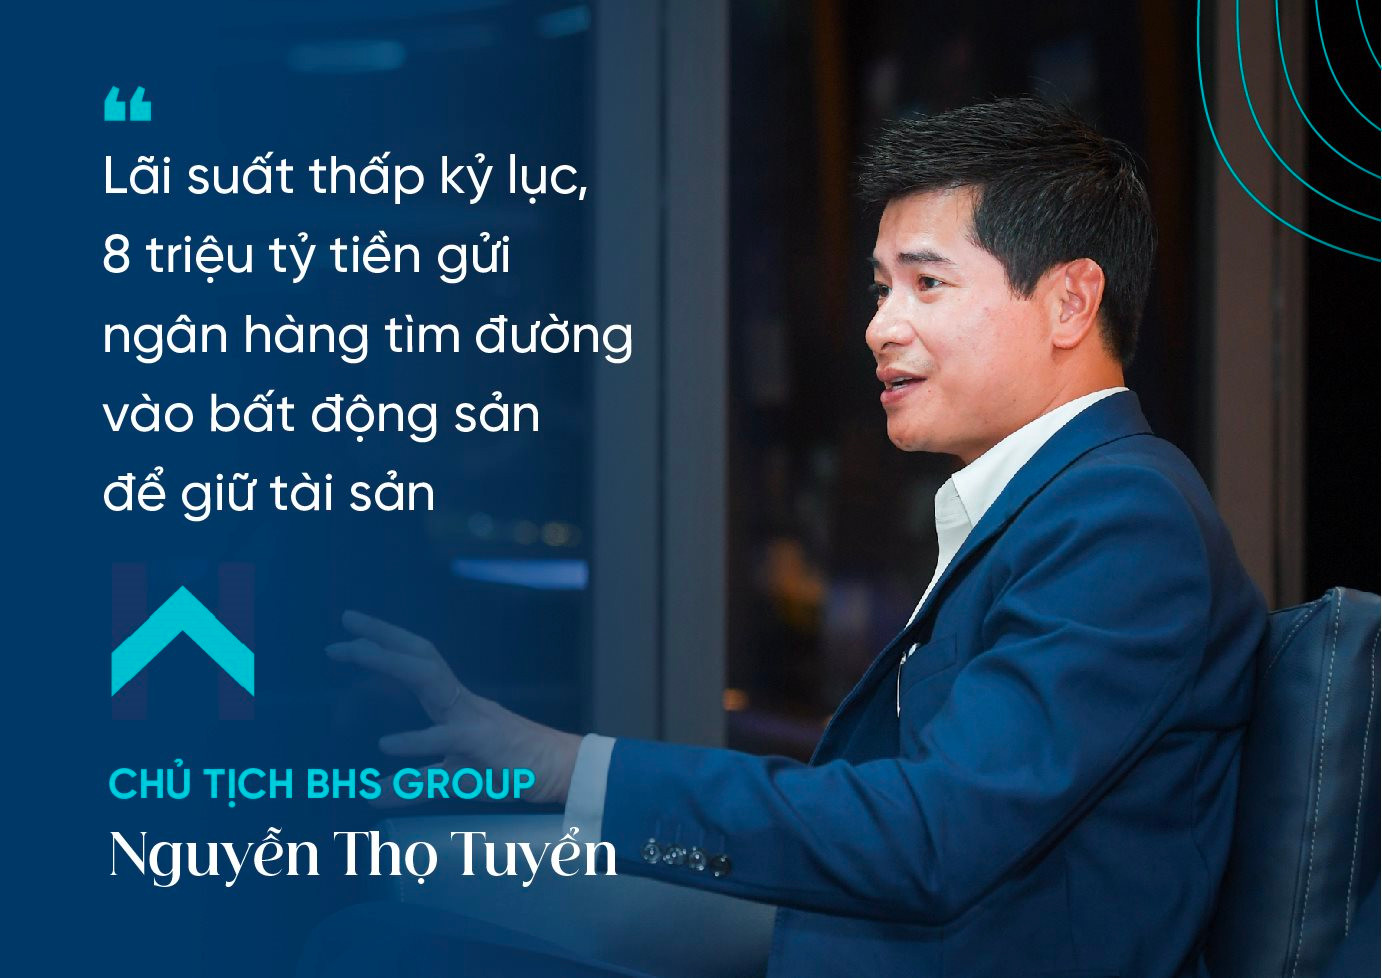 Chủ tịch BHS Group Nguyễn Thọ Tuyển: Dòng tiền lớn như một quả bom nguyên tử đang “hâm nóng” bất động sản Hà Nội, tiếp theo sẽ kích nổ hàng loạt khu vực - Ảnh 3.